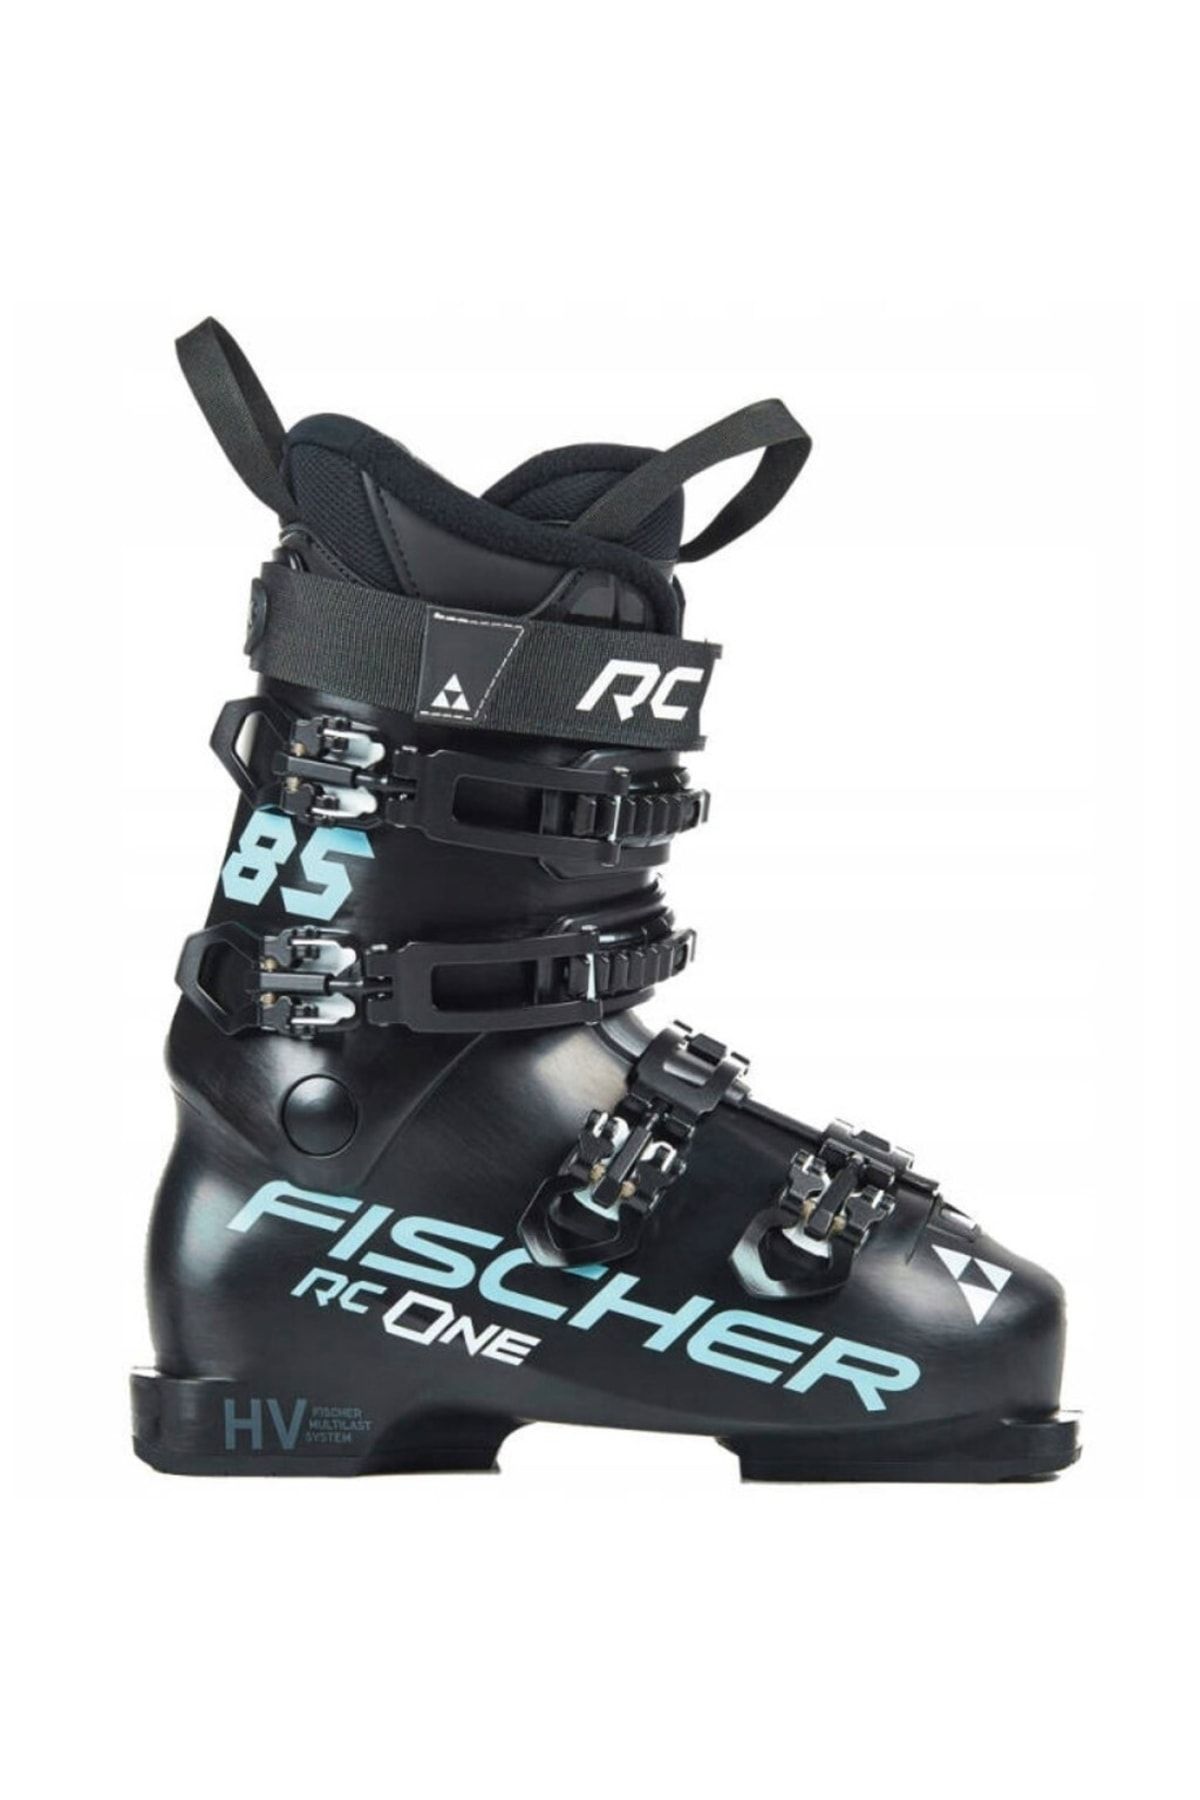 Fischer Rc One 85 Kayak Ayakkabısı